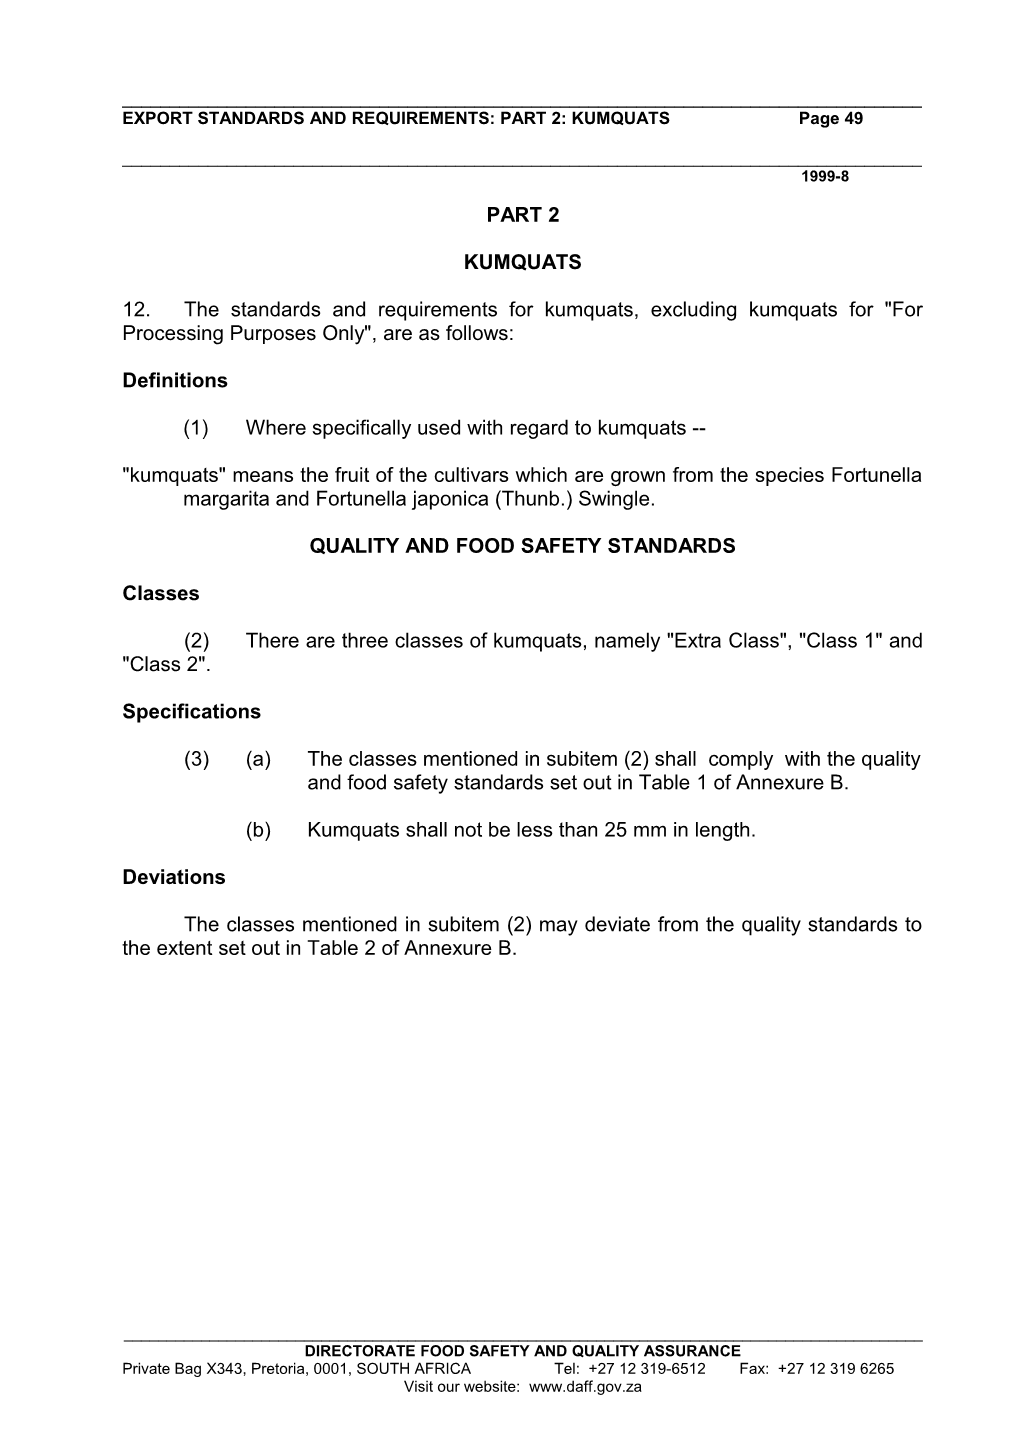 EXPORT STANDARDS and REQUIREMENTS: PART 2: Kumquatspage 1